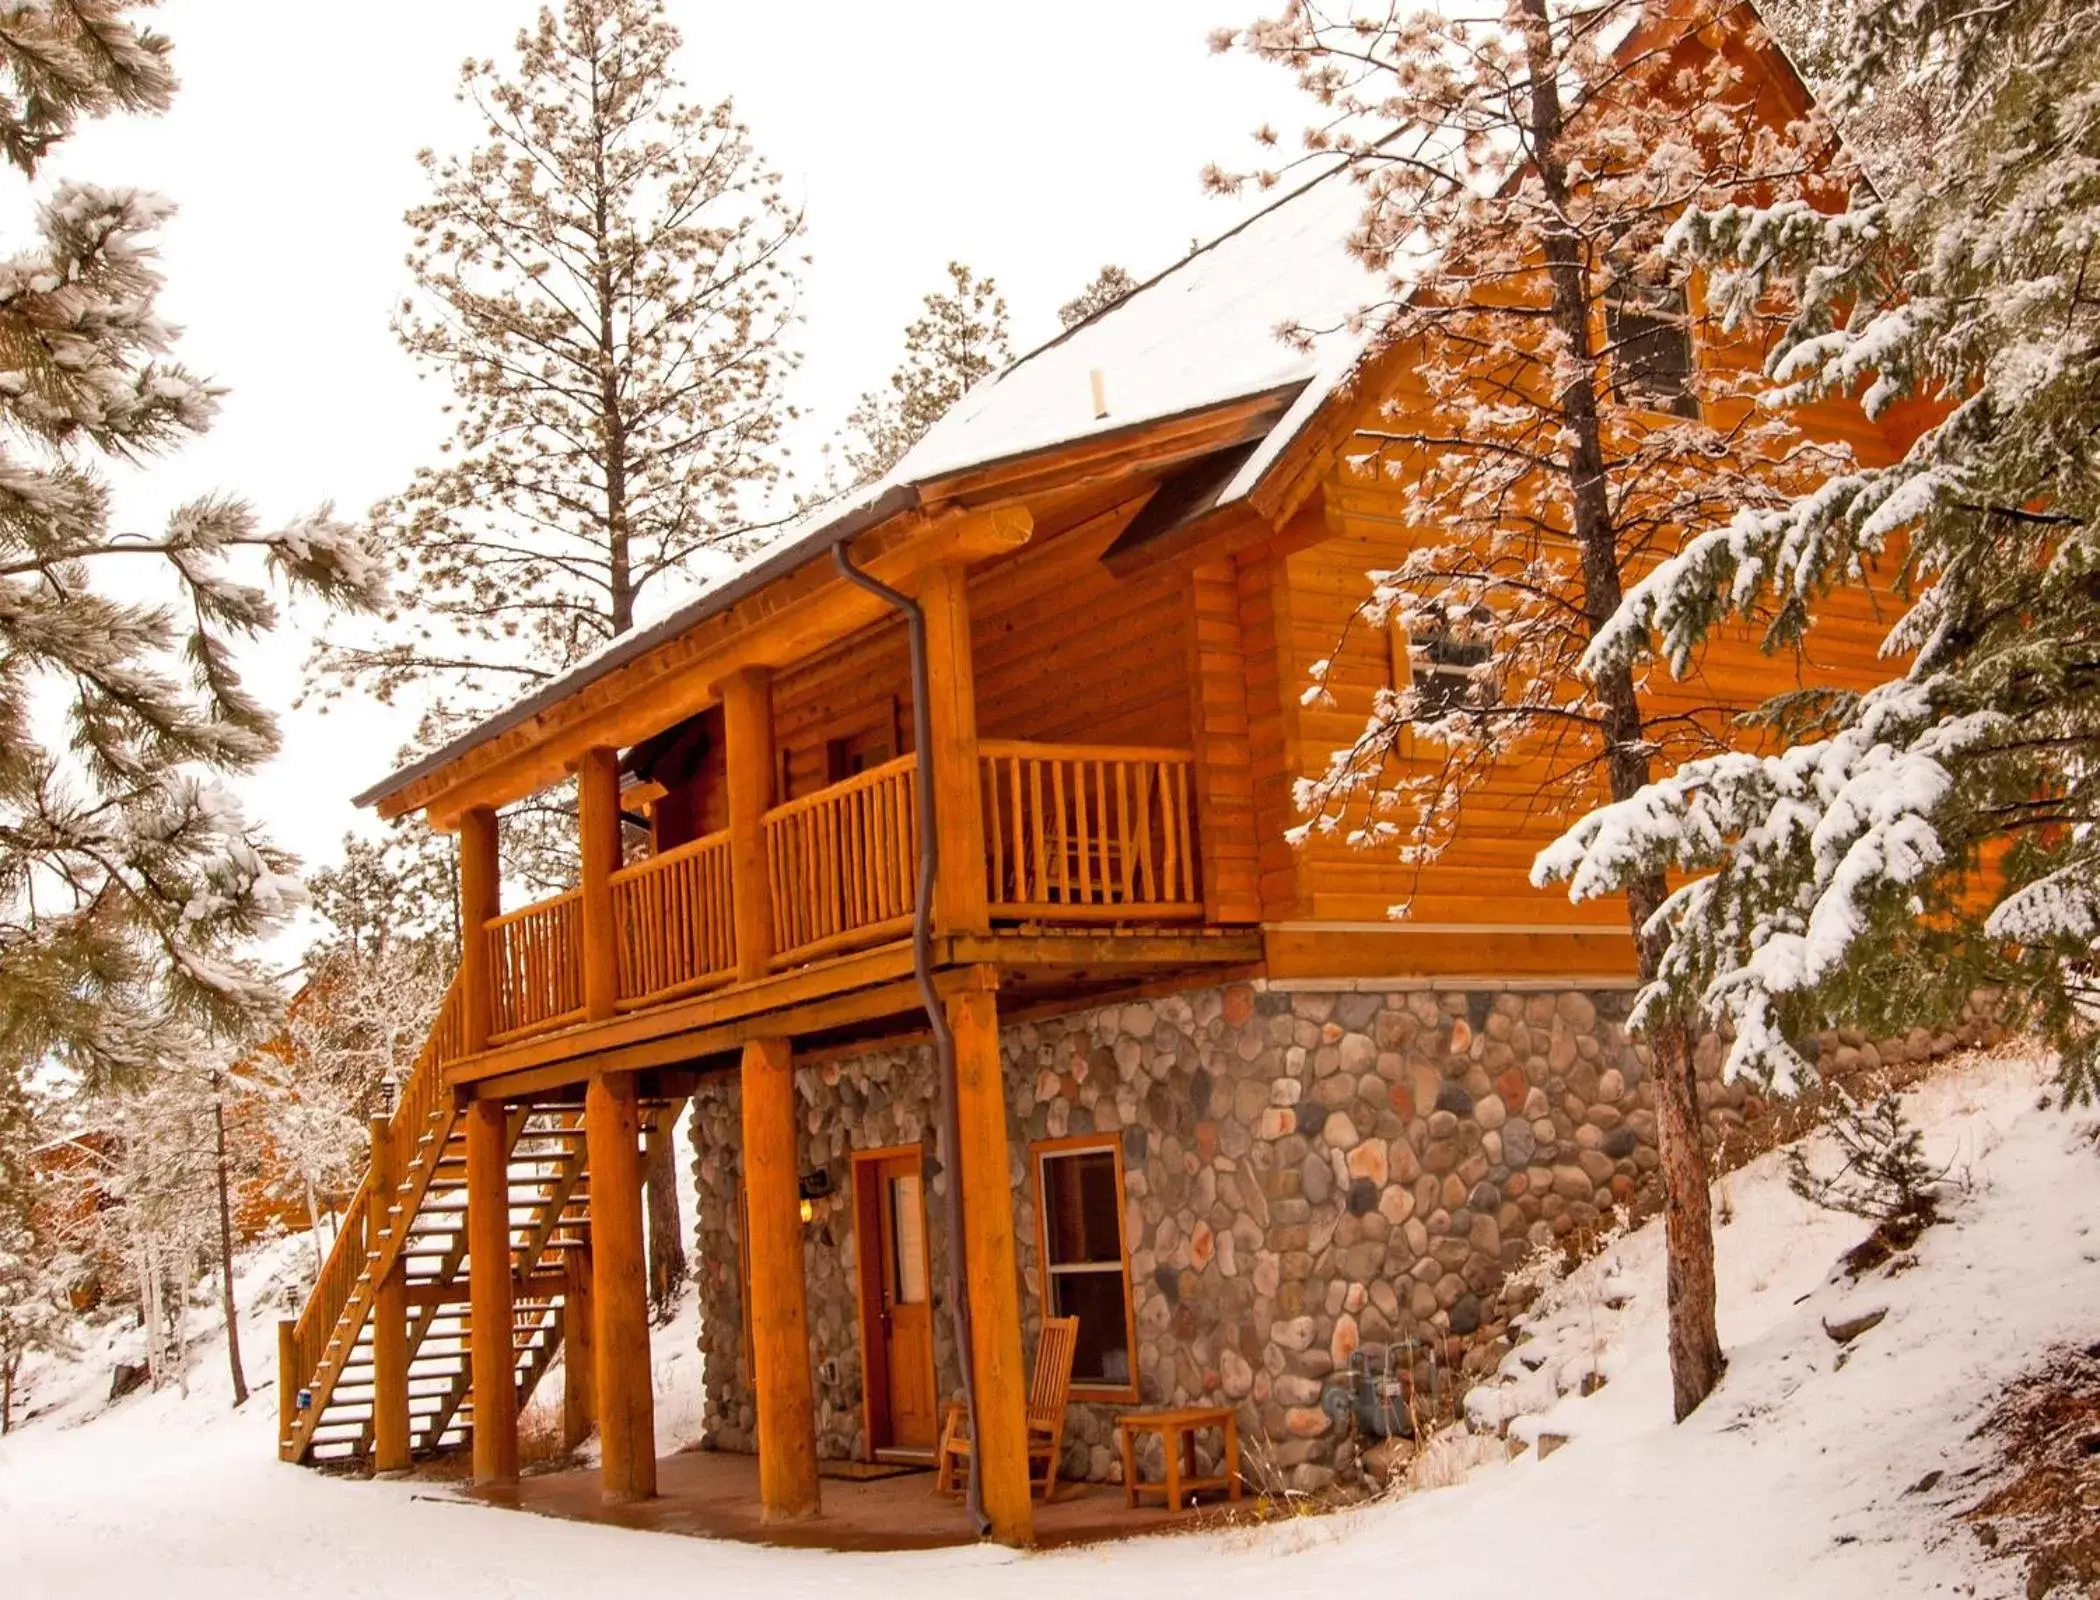 Winter in Mount Princeton Hot Springs Resort